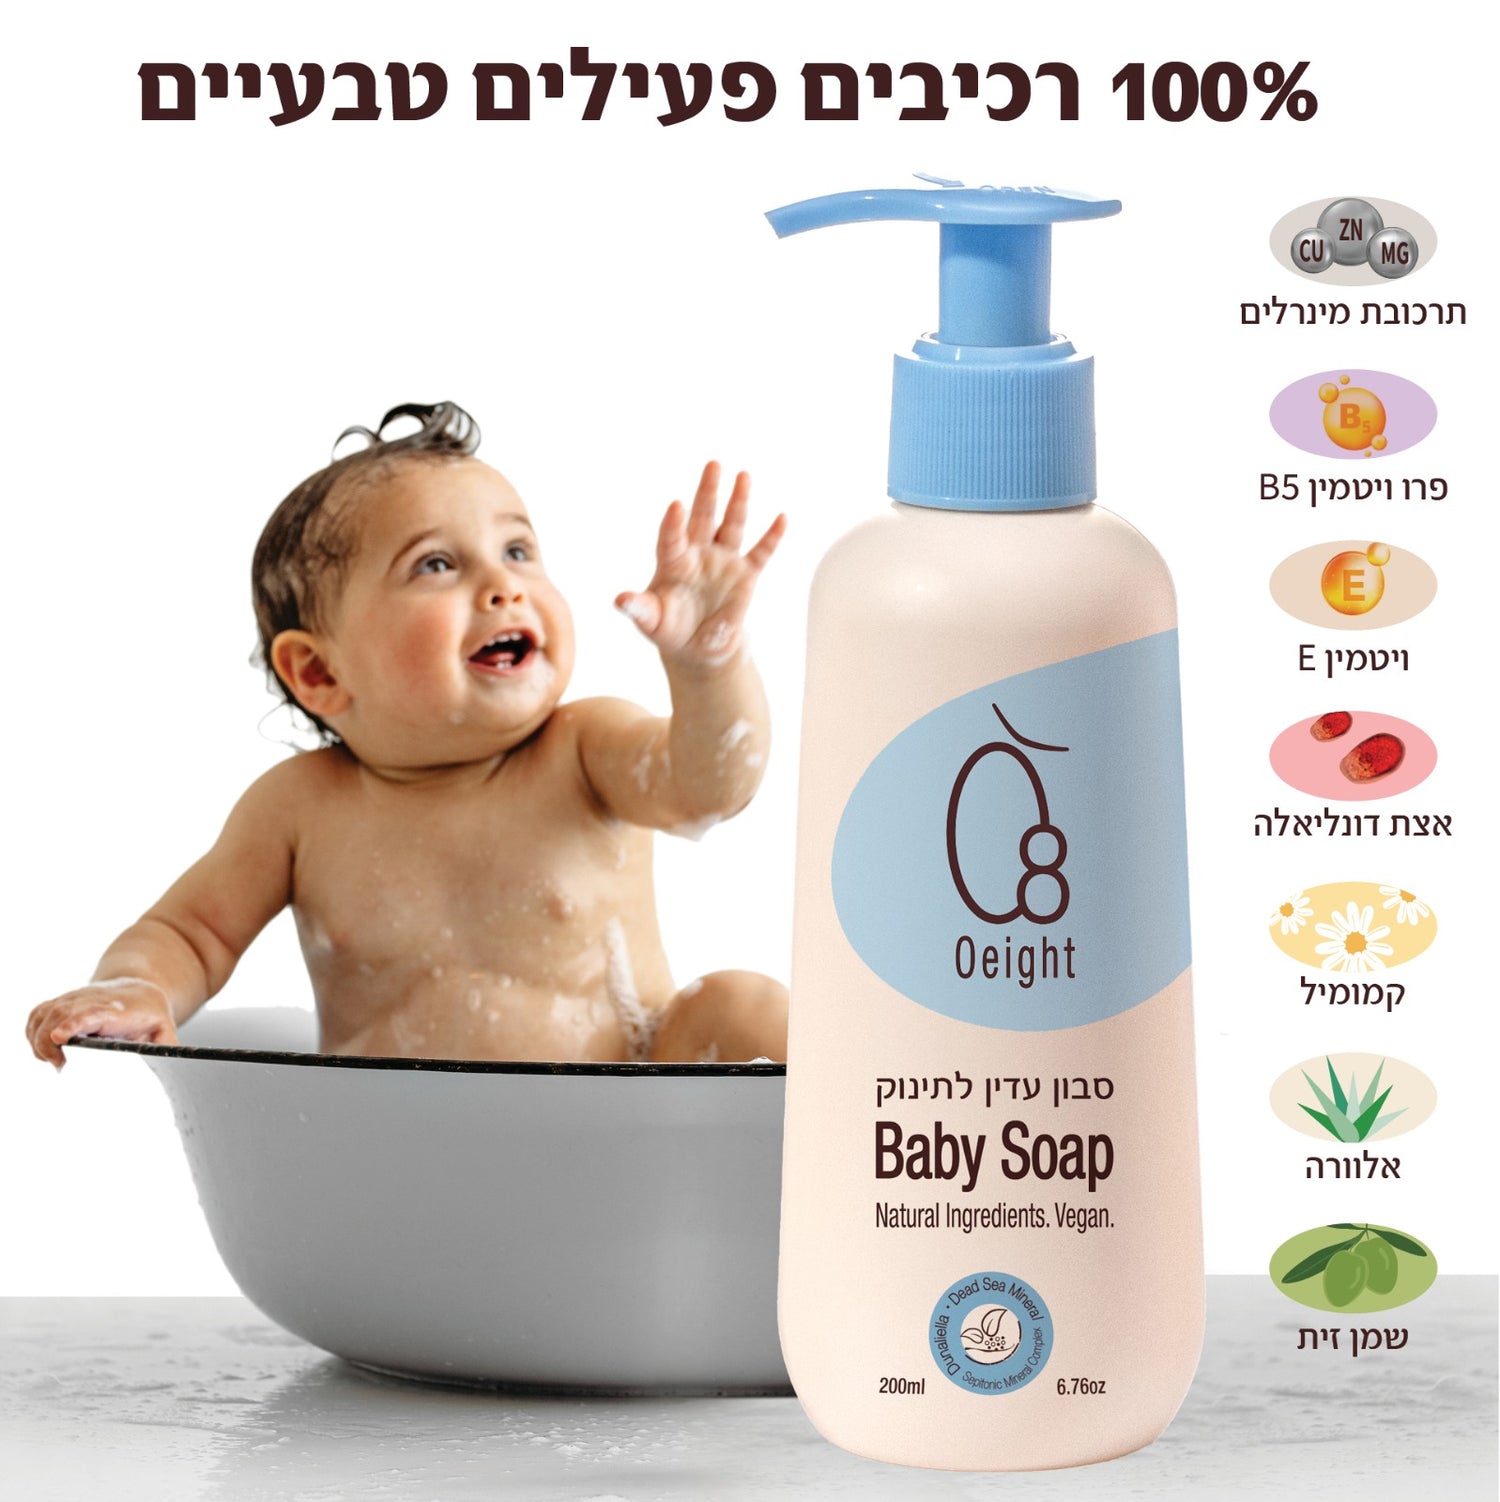 סבון עדין לתינוק